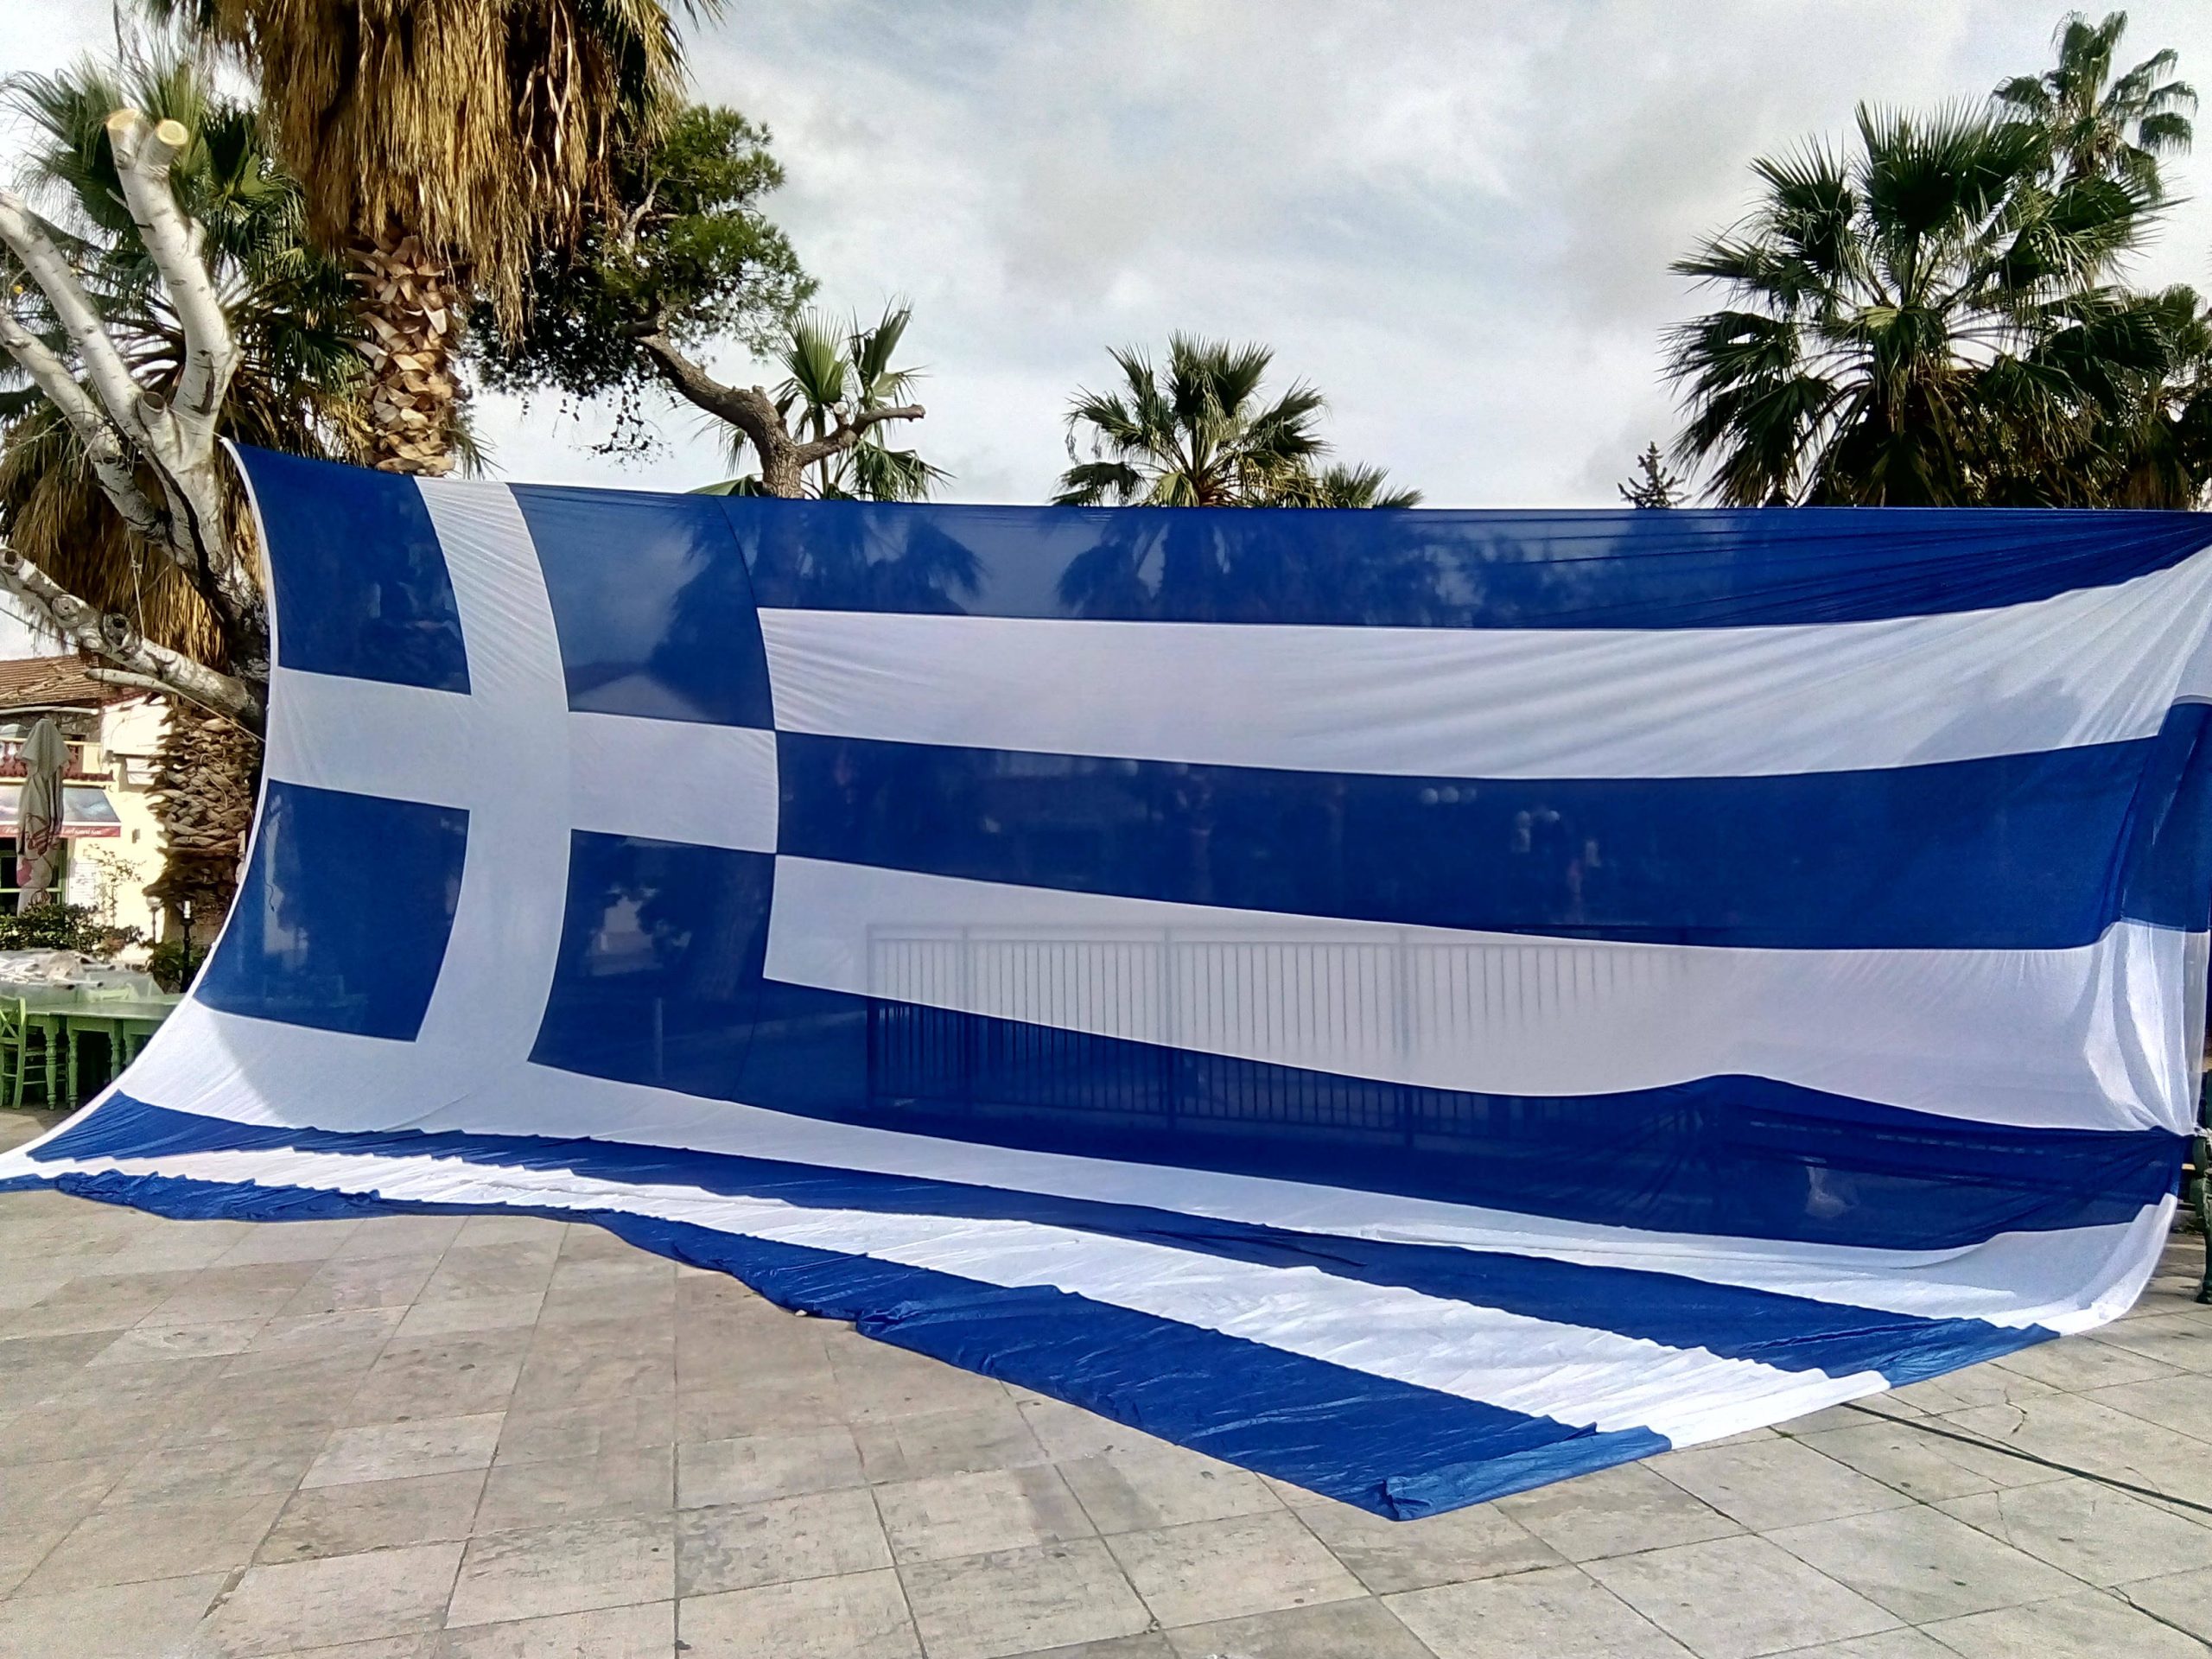 Το Ναύπλιο στηρίζει το συλλαλητήριο- Ύψωσαν ελληνική σημαία 130 τ.μ (φωτό)